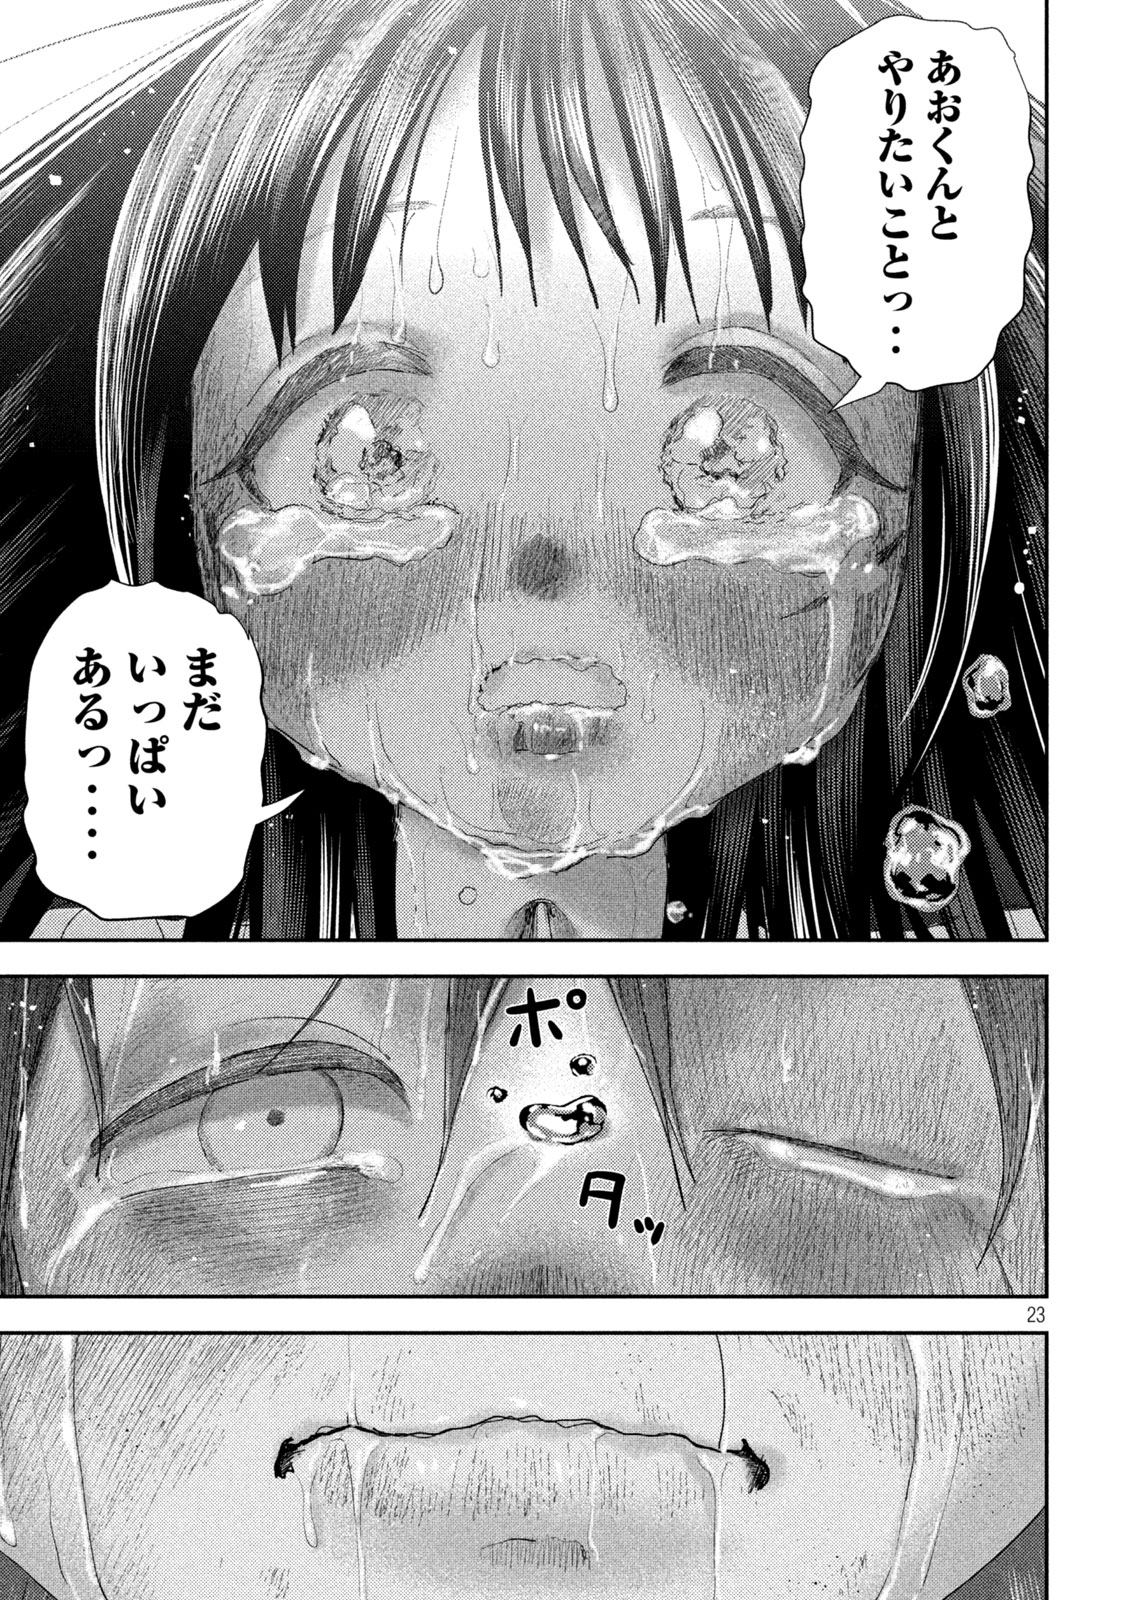 Nezumi no Koi - Chapter 26 - Page 23